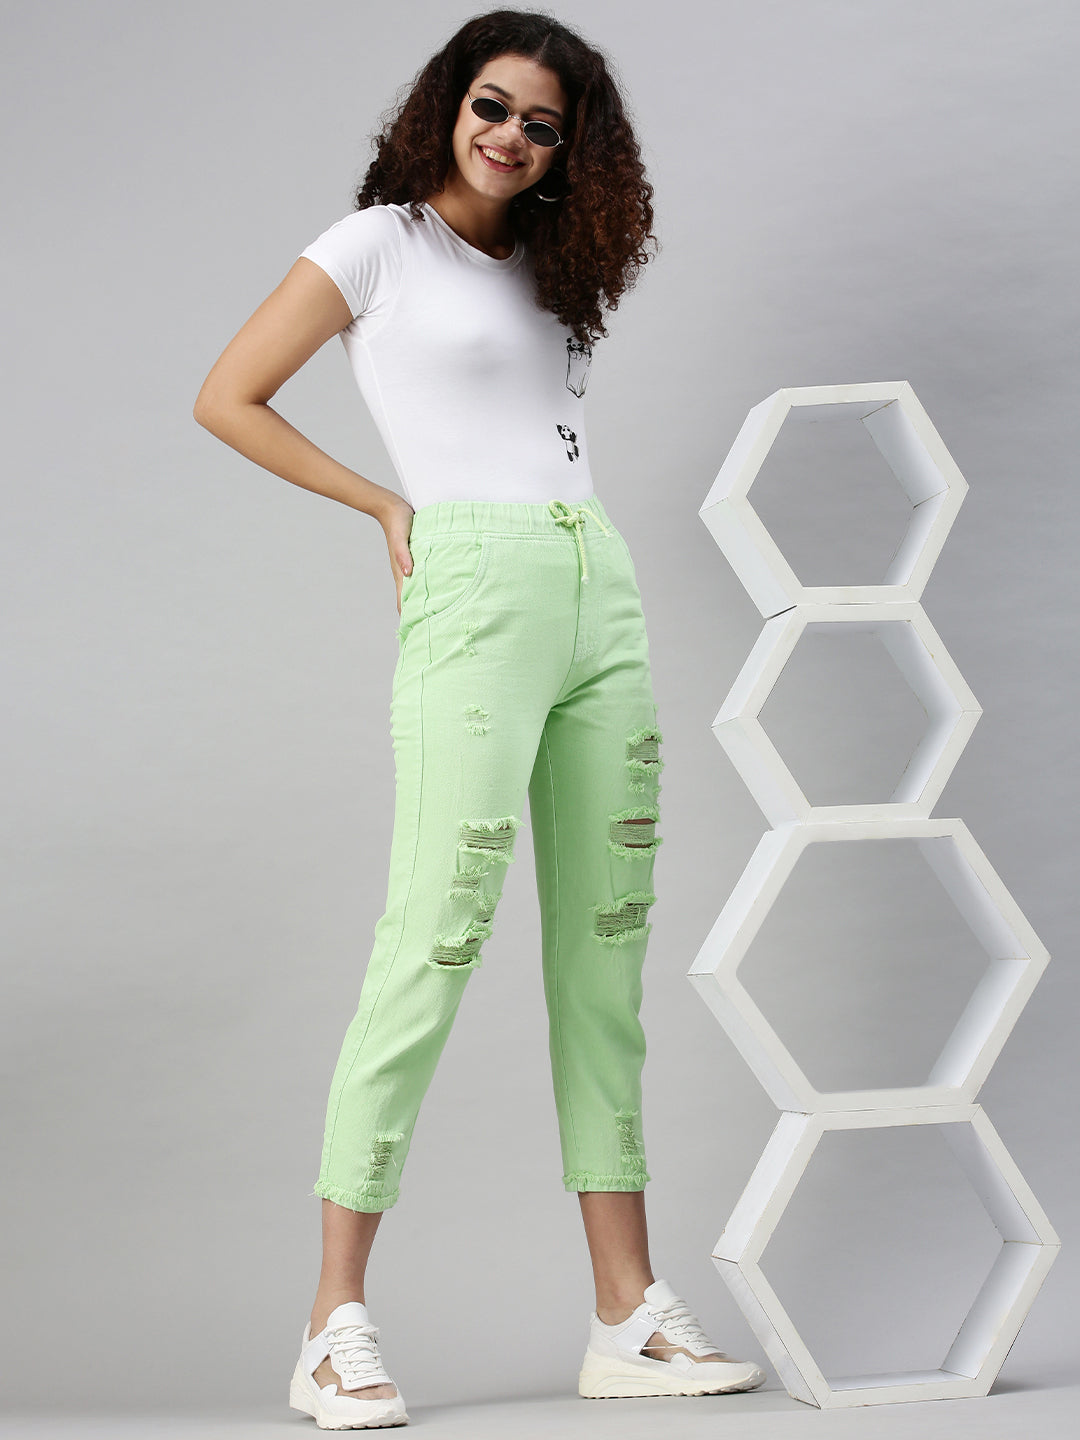 Women's Denim Jogger Lime Green Jeans